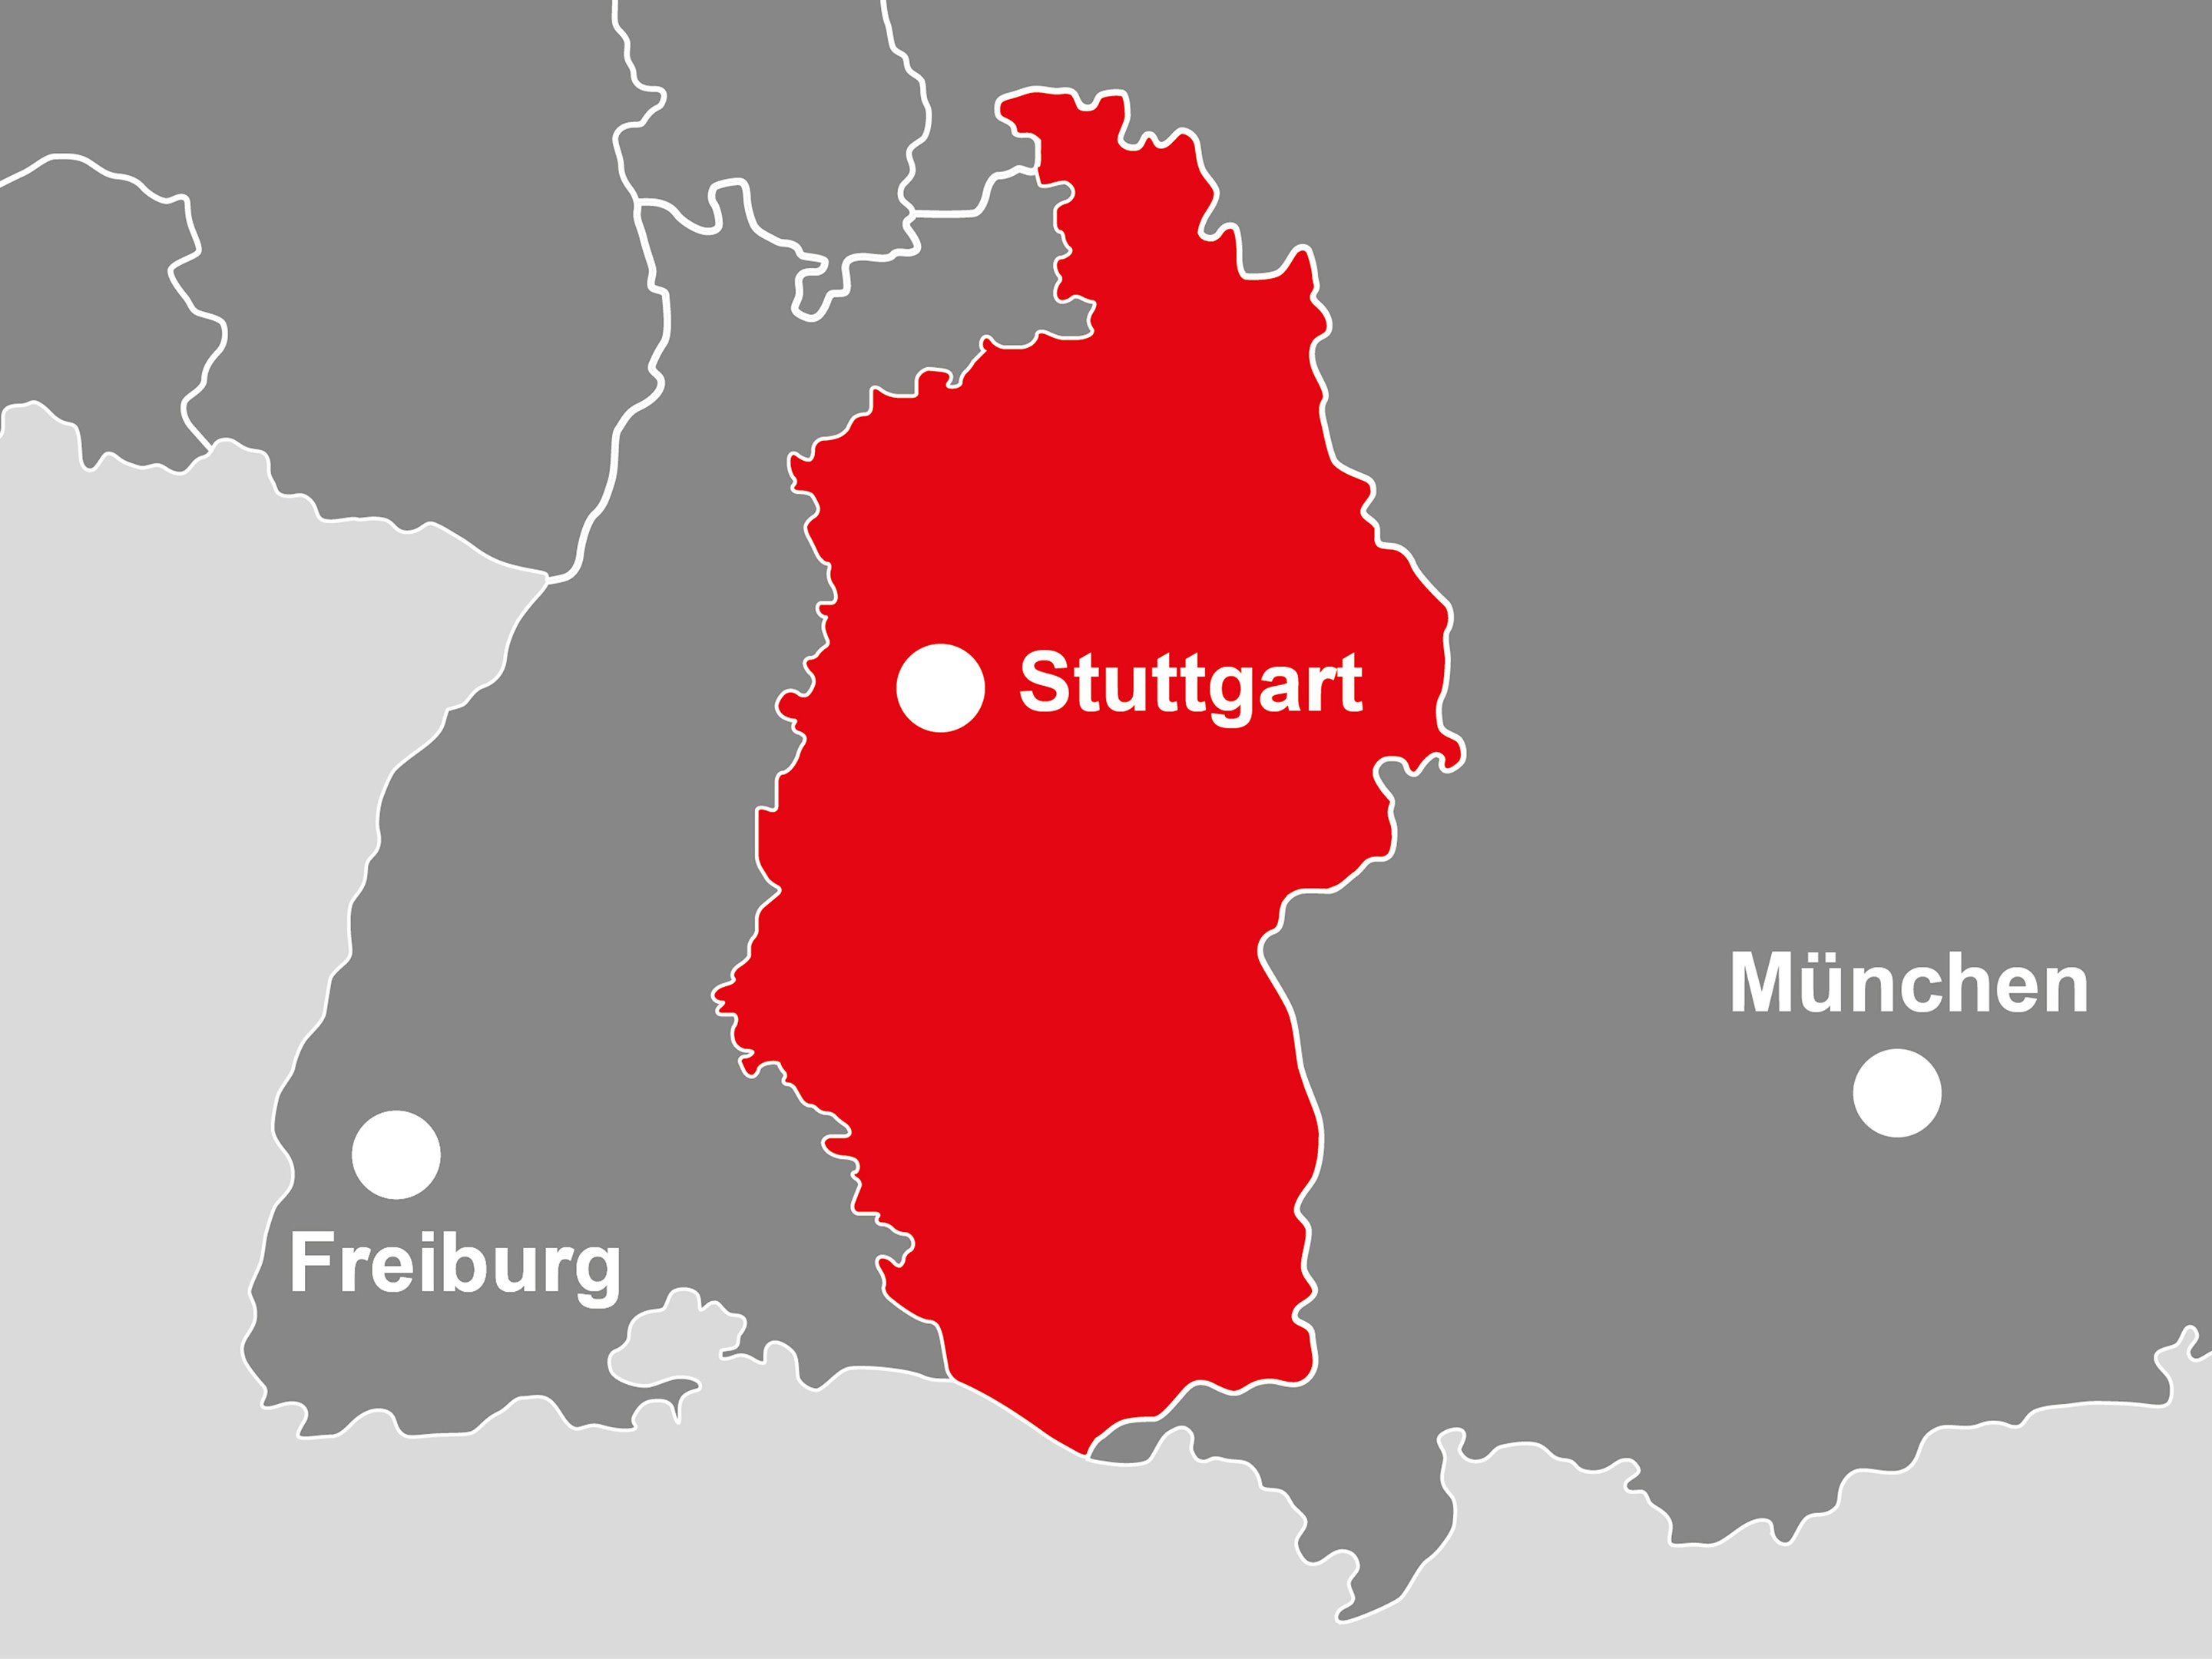 Bild: Die Landkarte zeigt Württemberg, dort wo der Bereich Stuttgart ankauft 